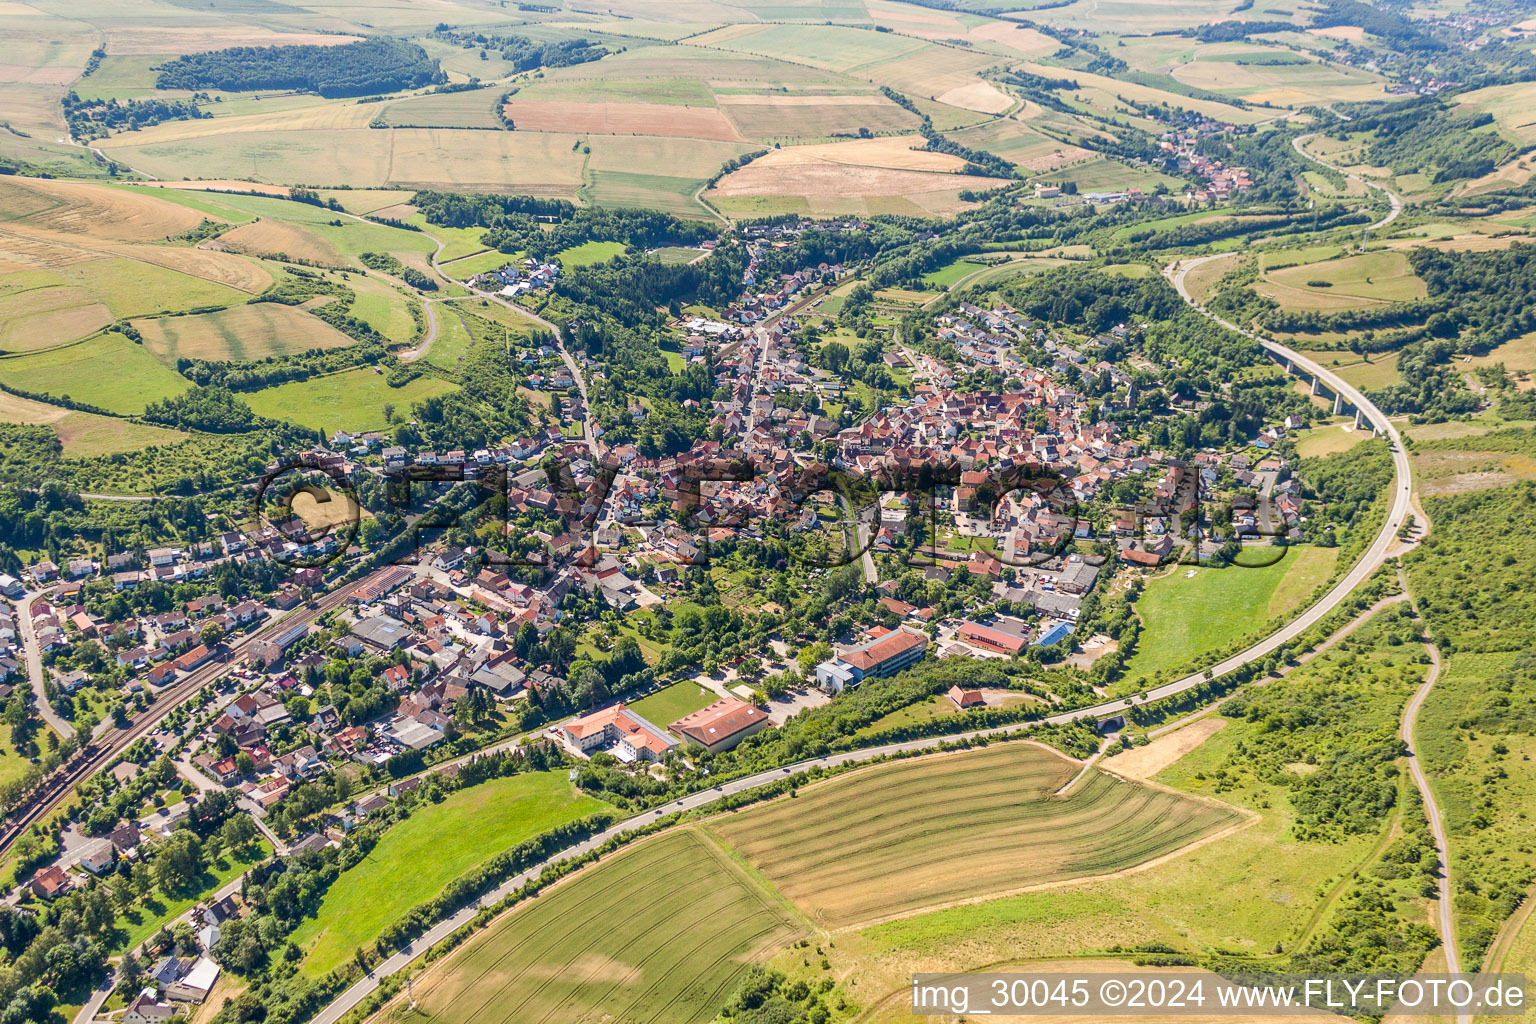 Luftbild von Dorf - Ansicht am Rande von landwirtschaftlichen Feldern und Nutzflächen und Ortsumfahrung der B38 in Alsenz im Bundesland Rheinland-Pfalz, Deutschland